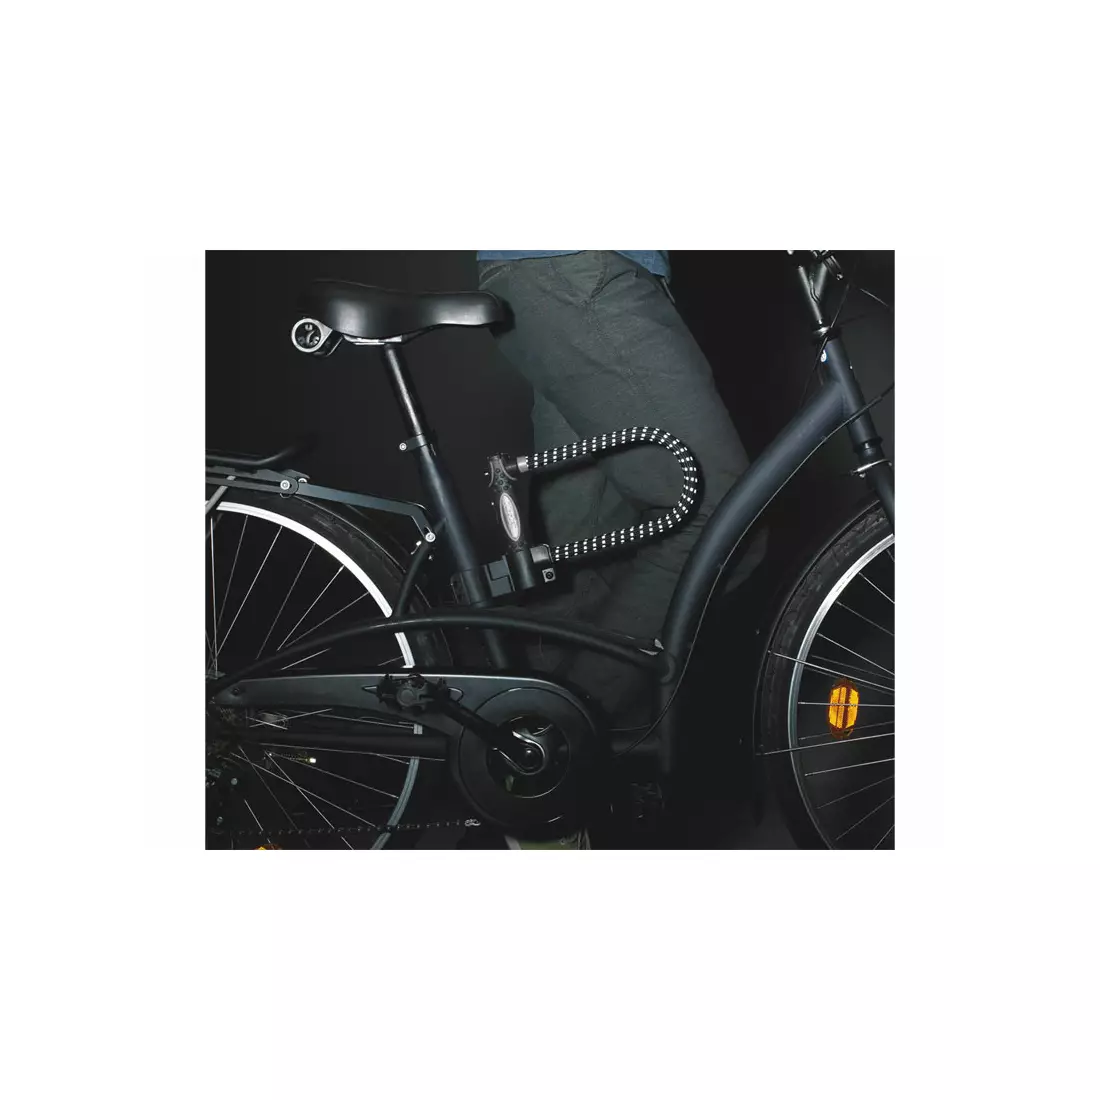 MASTERLOCK 8195LW U-LOCK Fahrradschloss 13 mm 110 mm 280 mm SCHLÜSSEL mit Gummi überzogen mit Reflexion schwarz MRL-8195EURDPROLWREF SS16